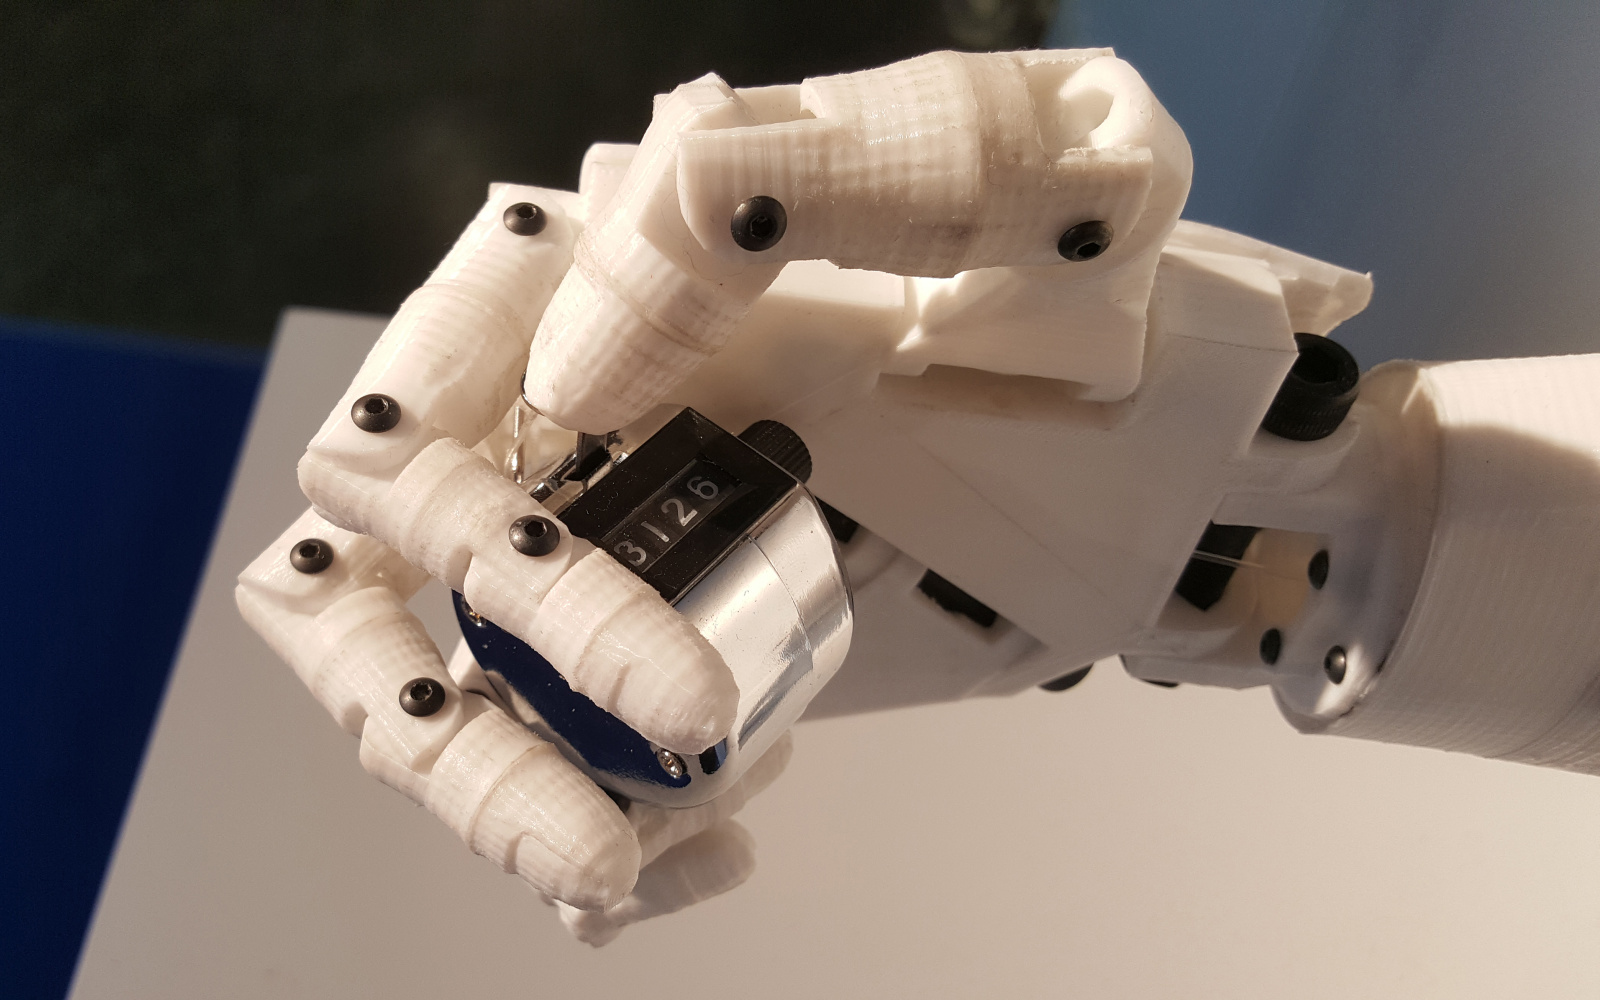 Das Foto zeigt eine weiße Roboterhand die einen Clicker umschlossen hält.